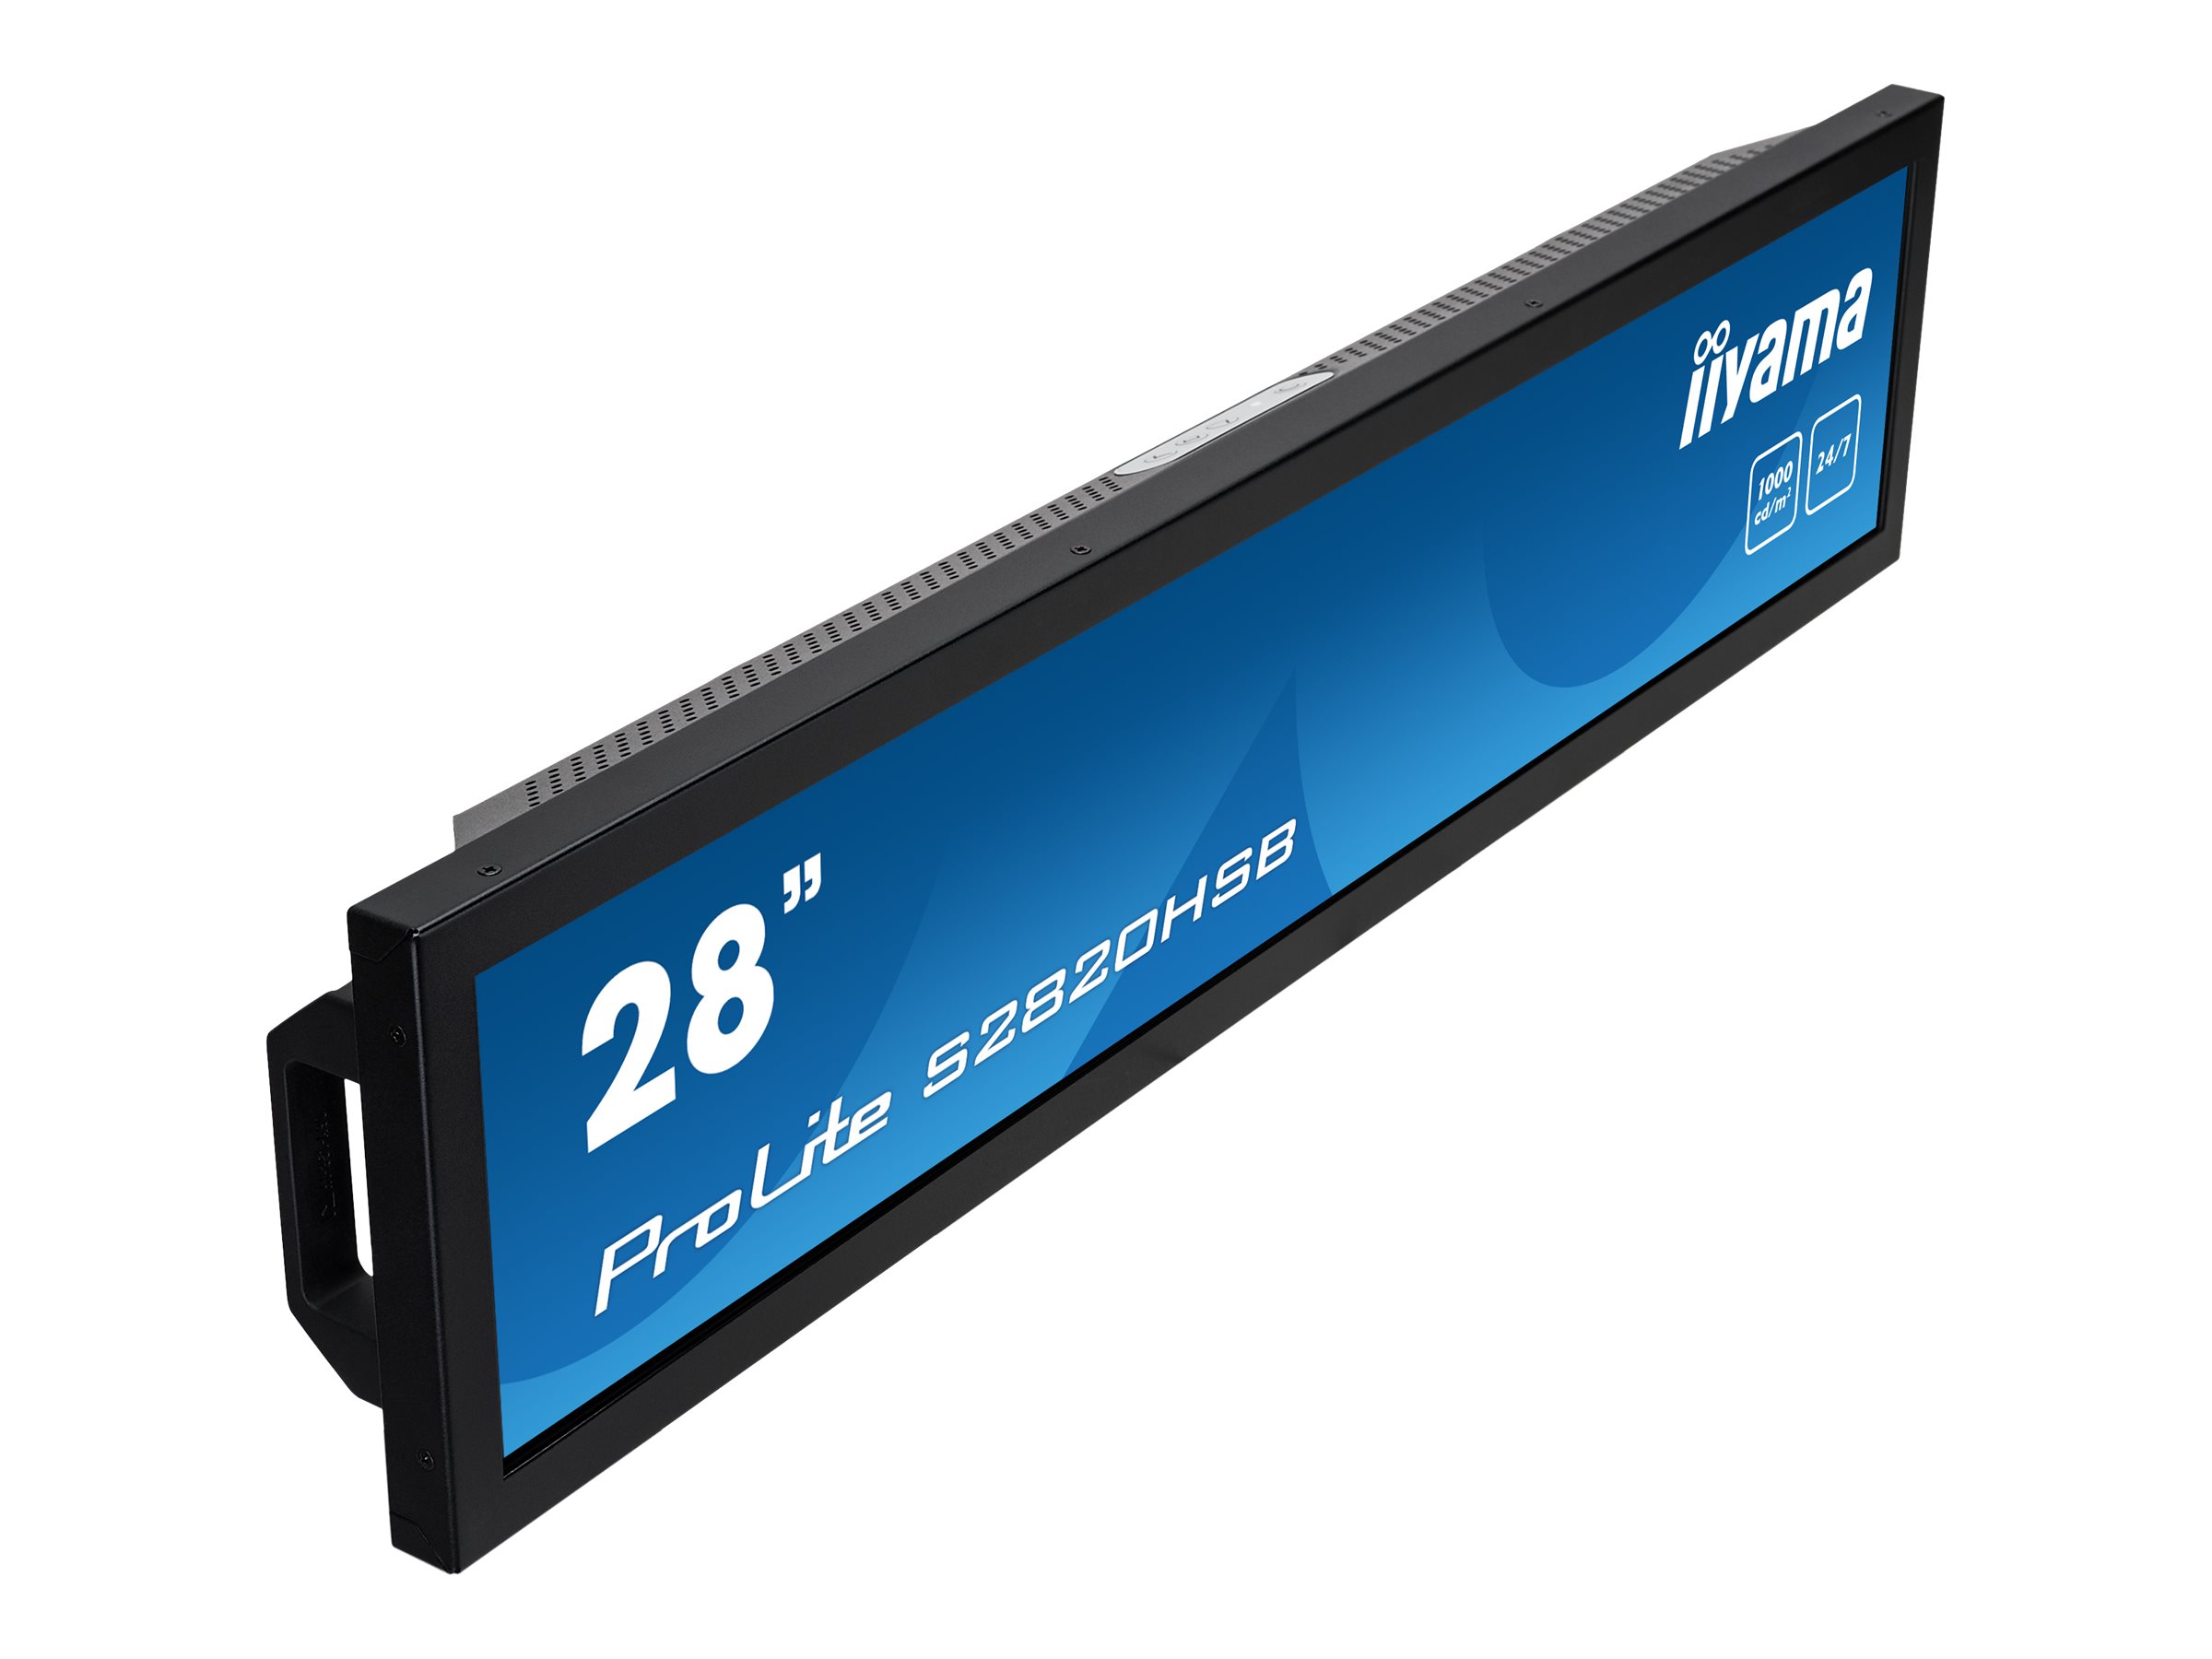 iiyama ProLite S2820HSB-B1 - Classe de diagonale 28" écran LCD rétro-éclairé par LED - signalisation numérique - 1080i 1920 x 360 - noir mat - S2820HSB-B1 - Écrans d'ordinateur